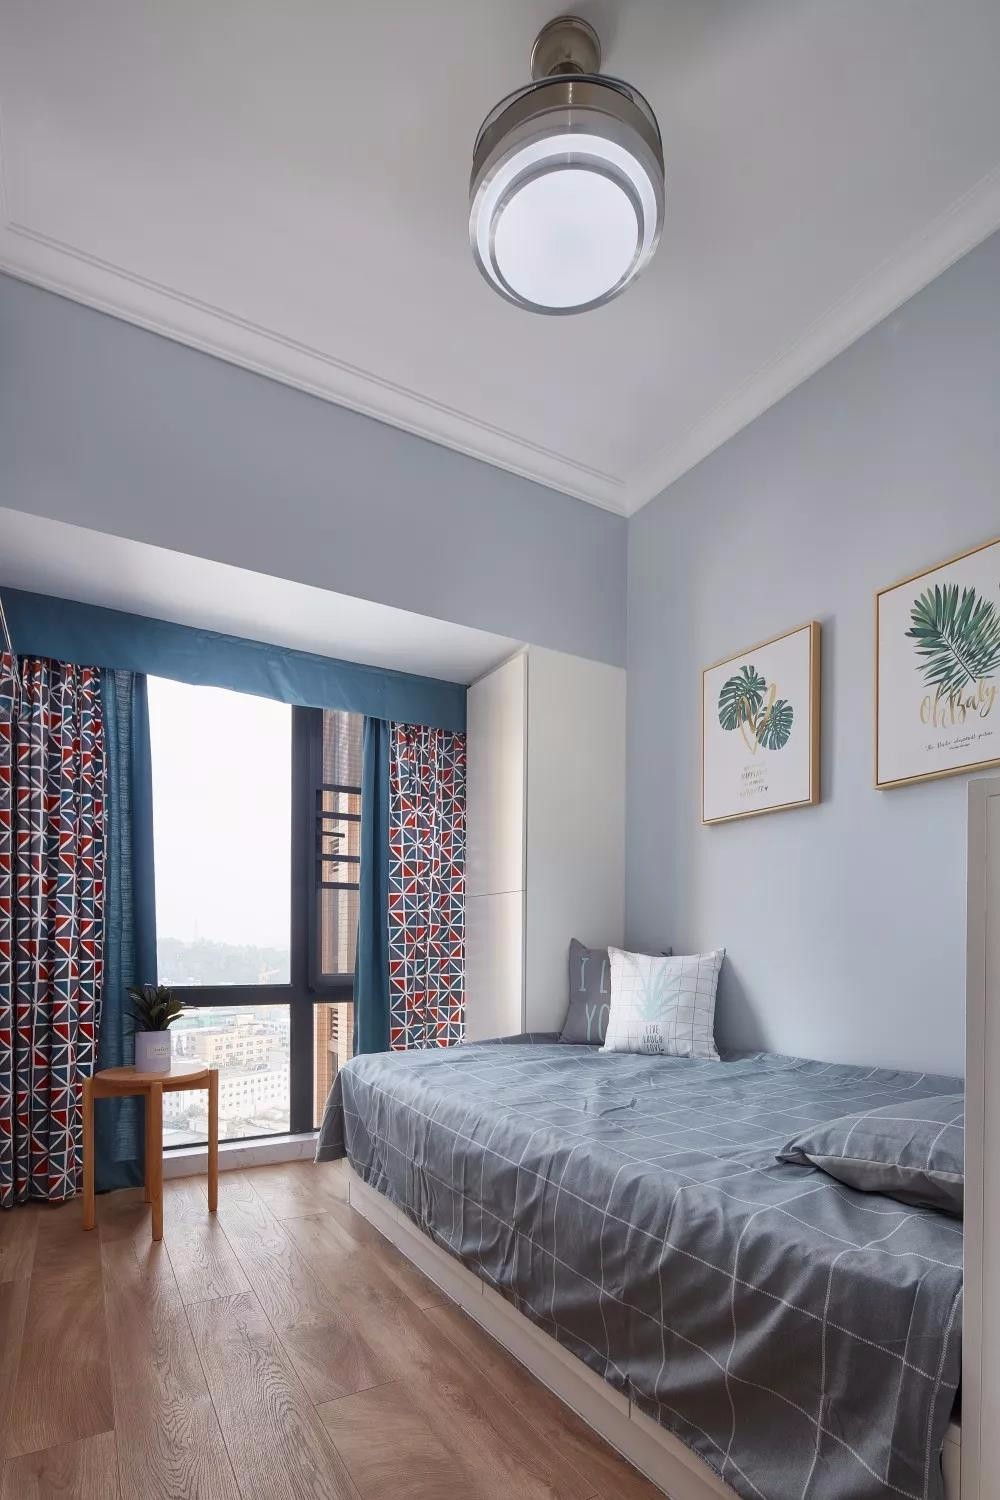 通风采光：卧室应保持良好的通风采光，避免阴气积聚。